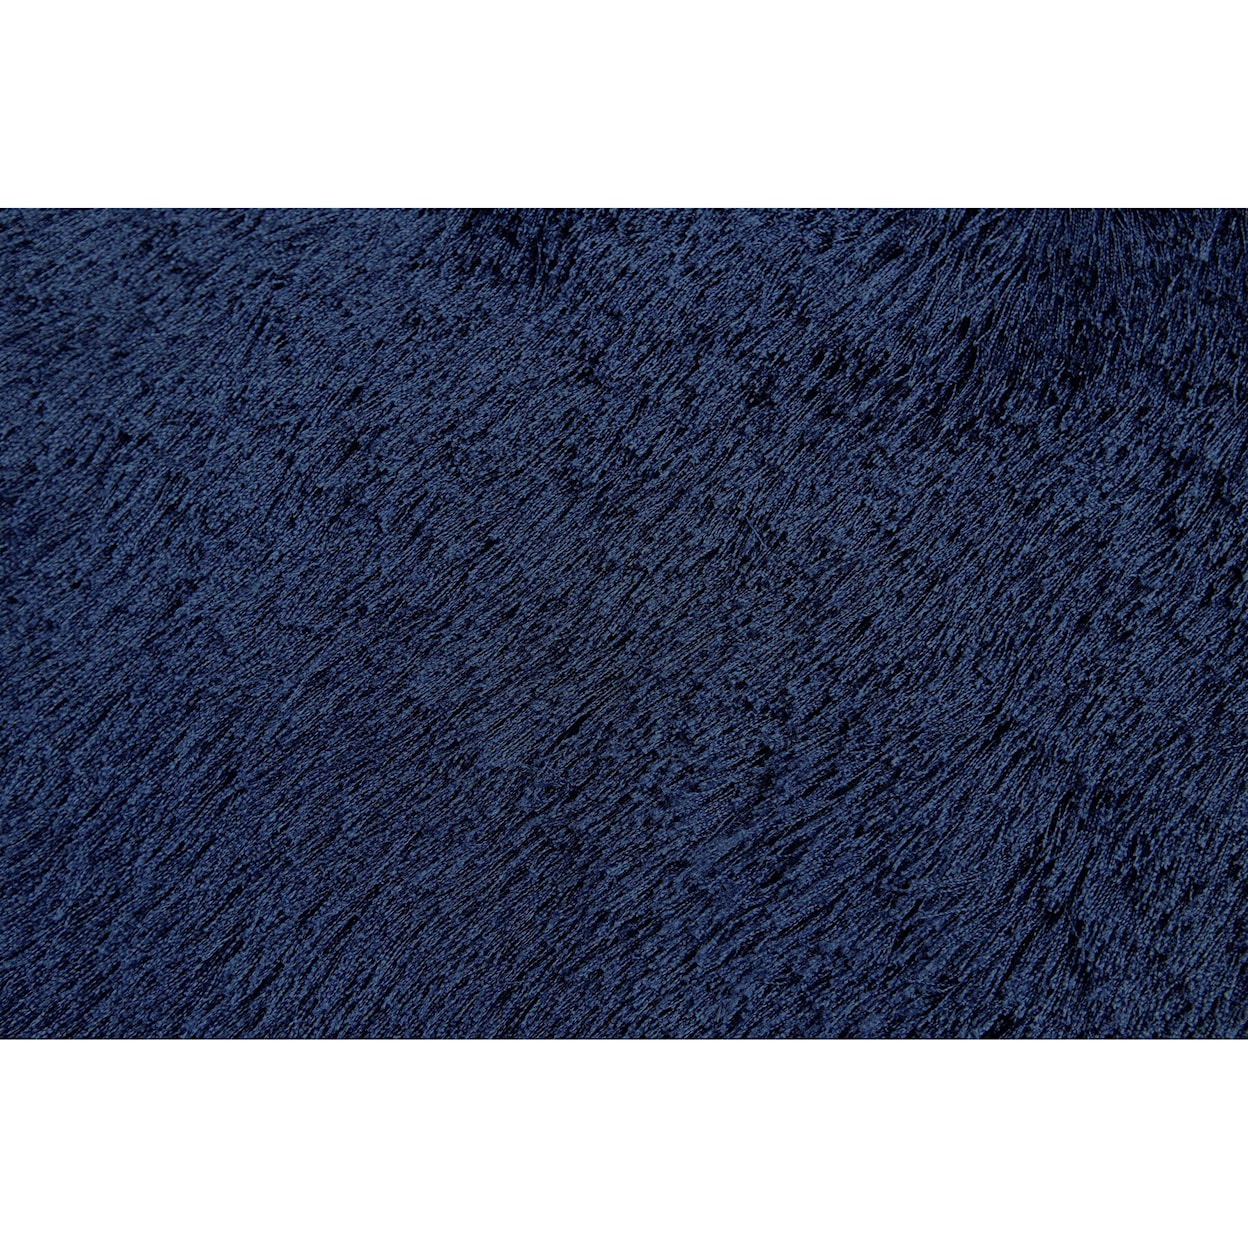 Feizy Rugs Indochine Dark Blue 2'-6" X 6' Runner Rug